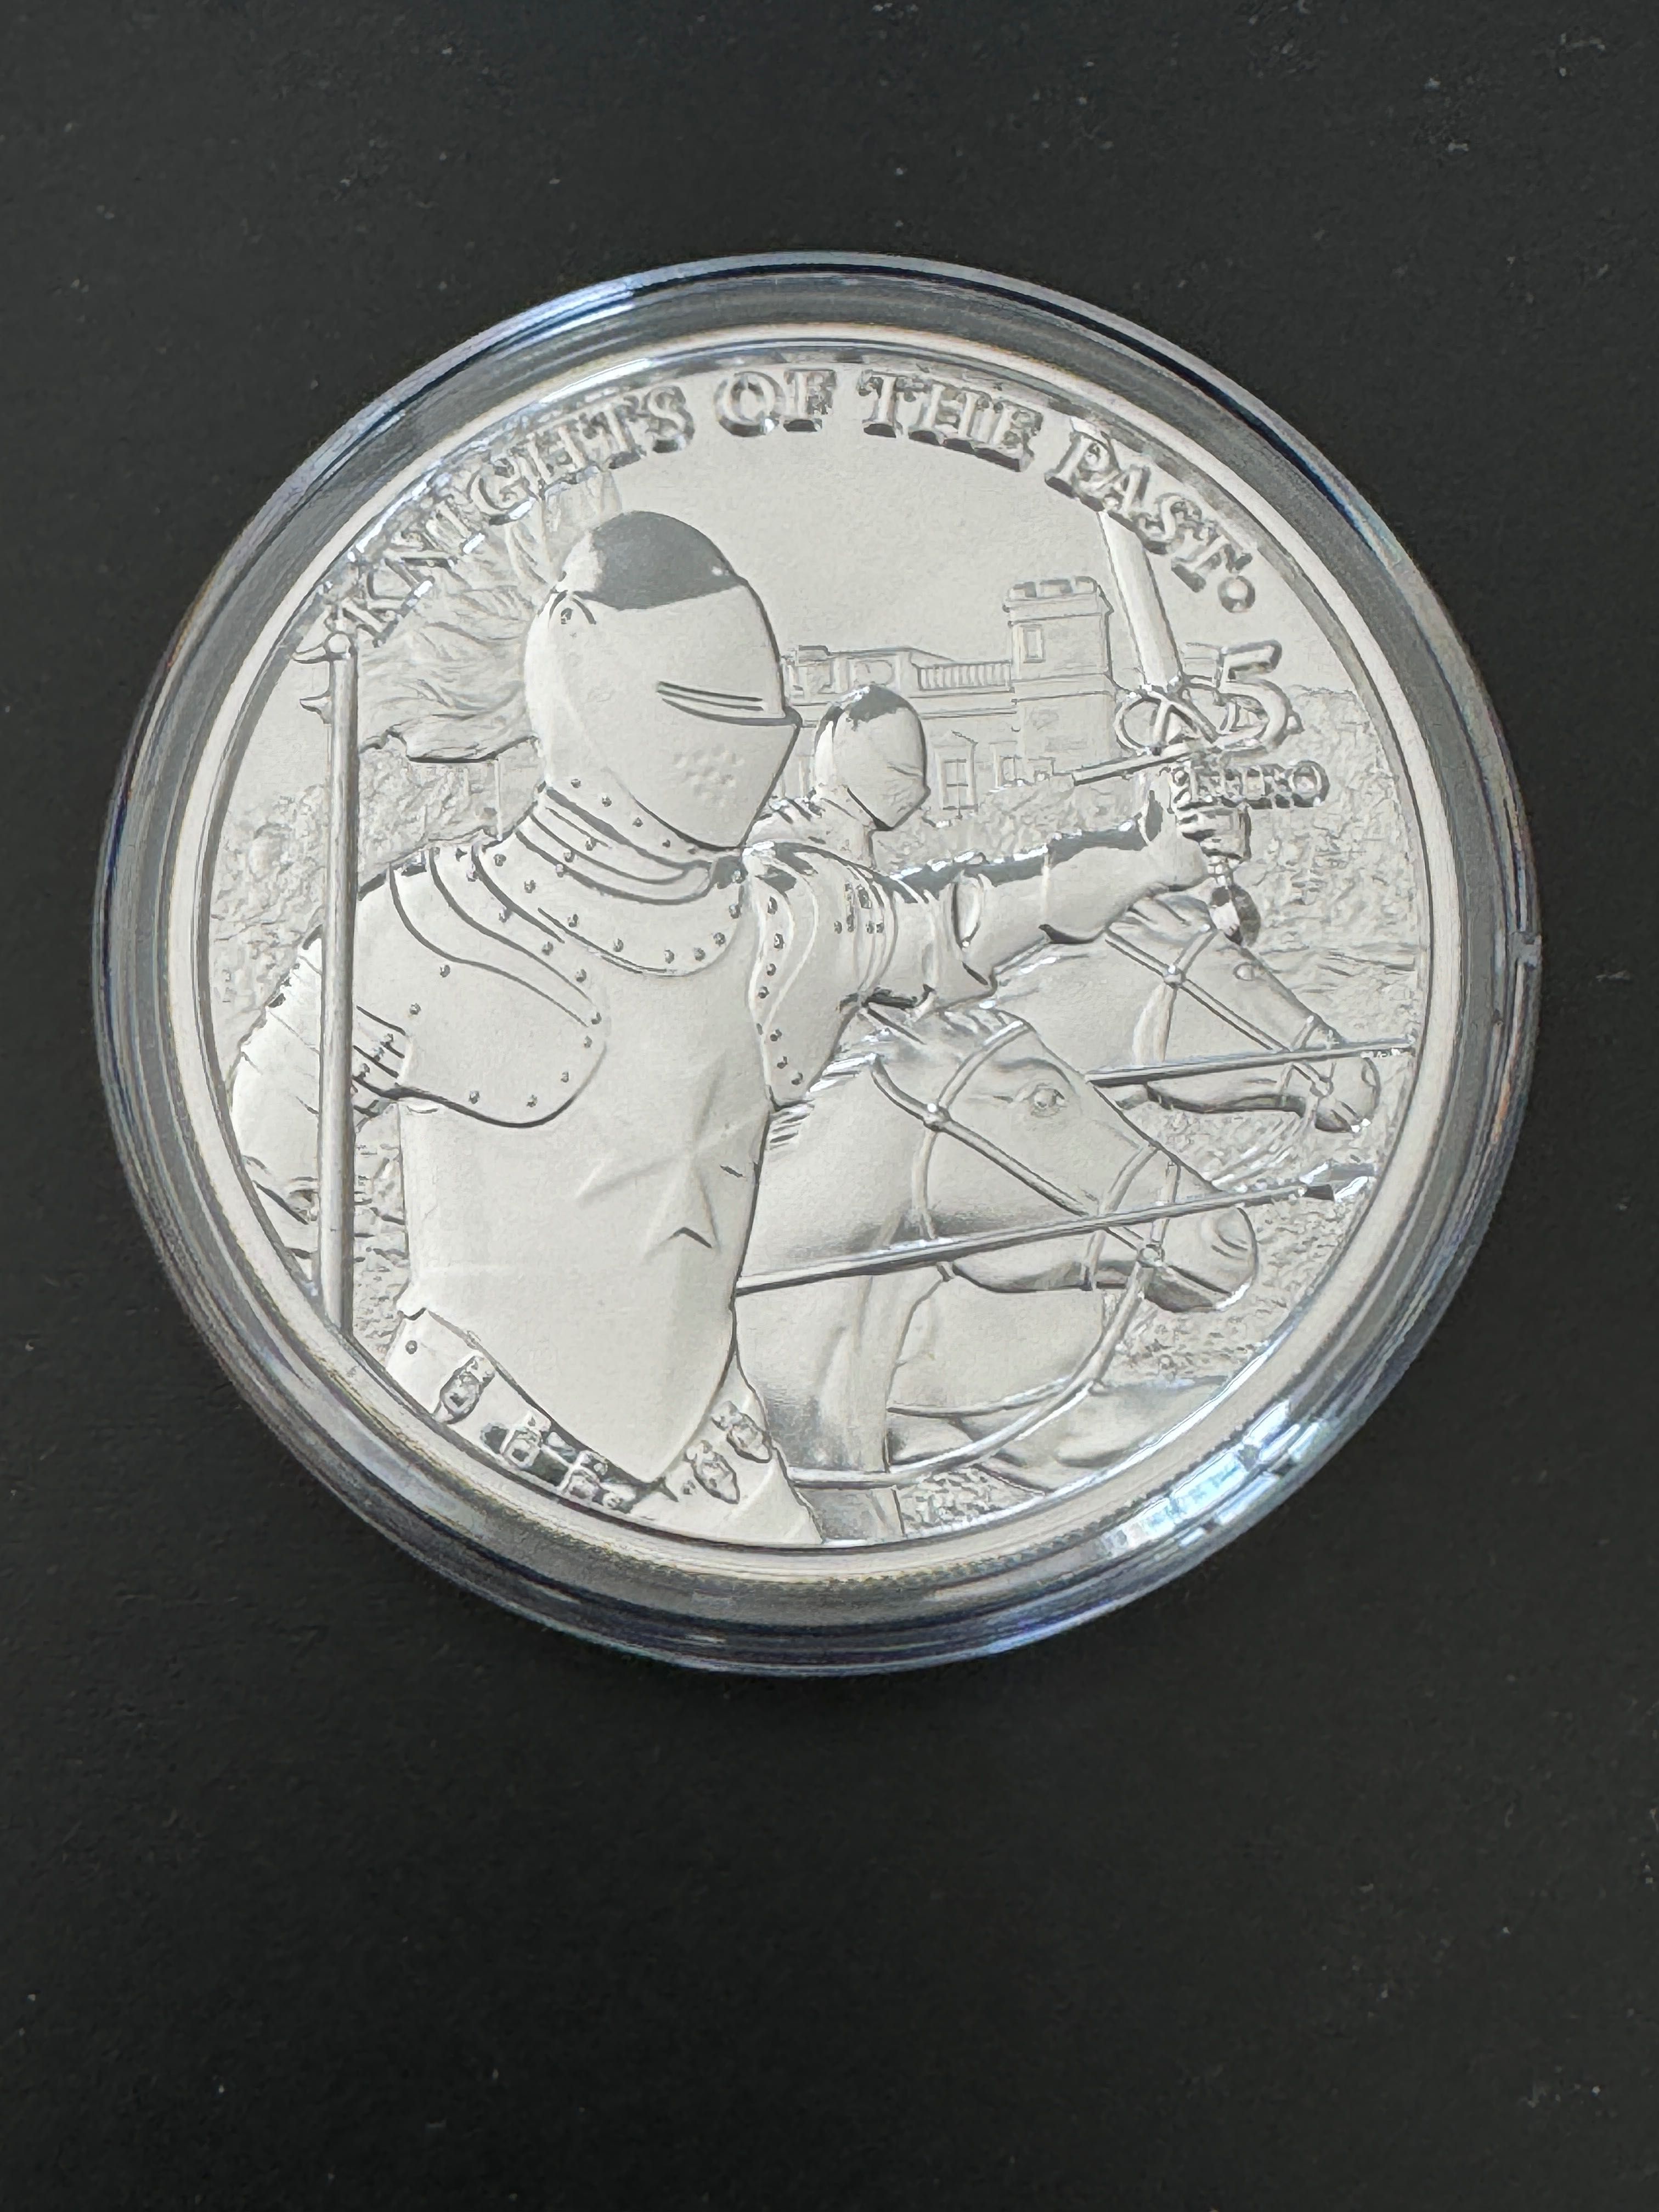 Moneda colecție proof lux argint lingou 999.9 Knights 2021 certificat